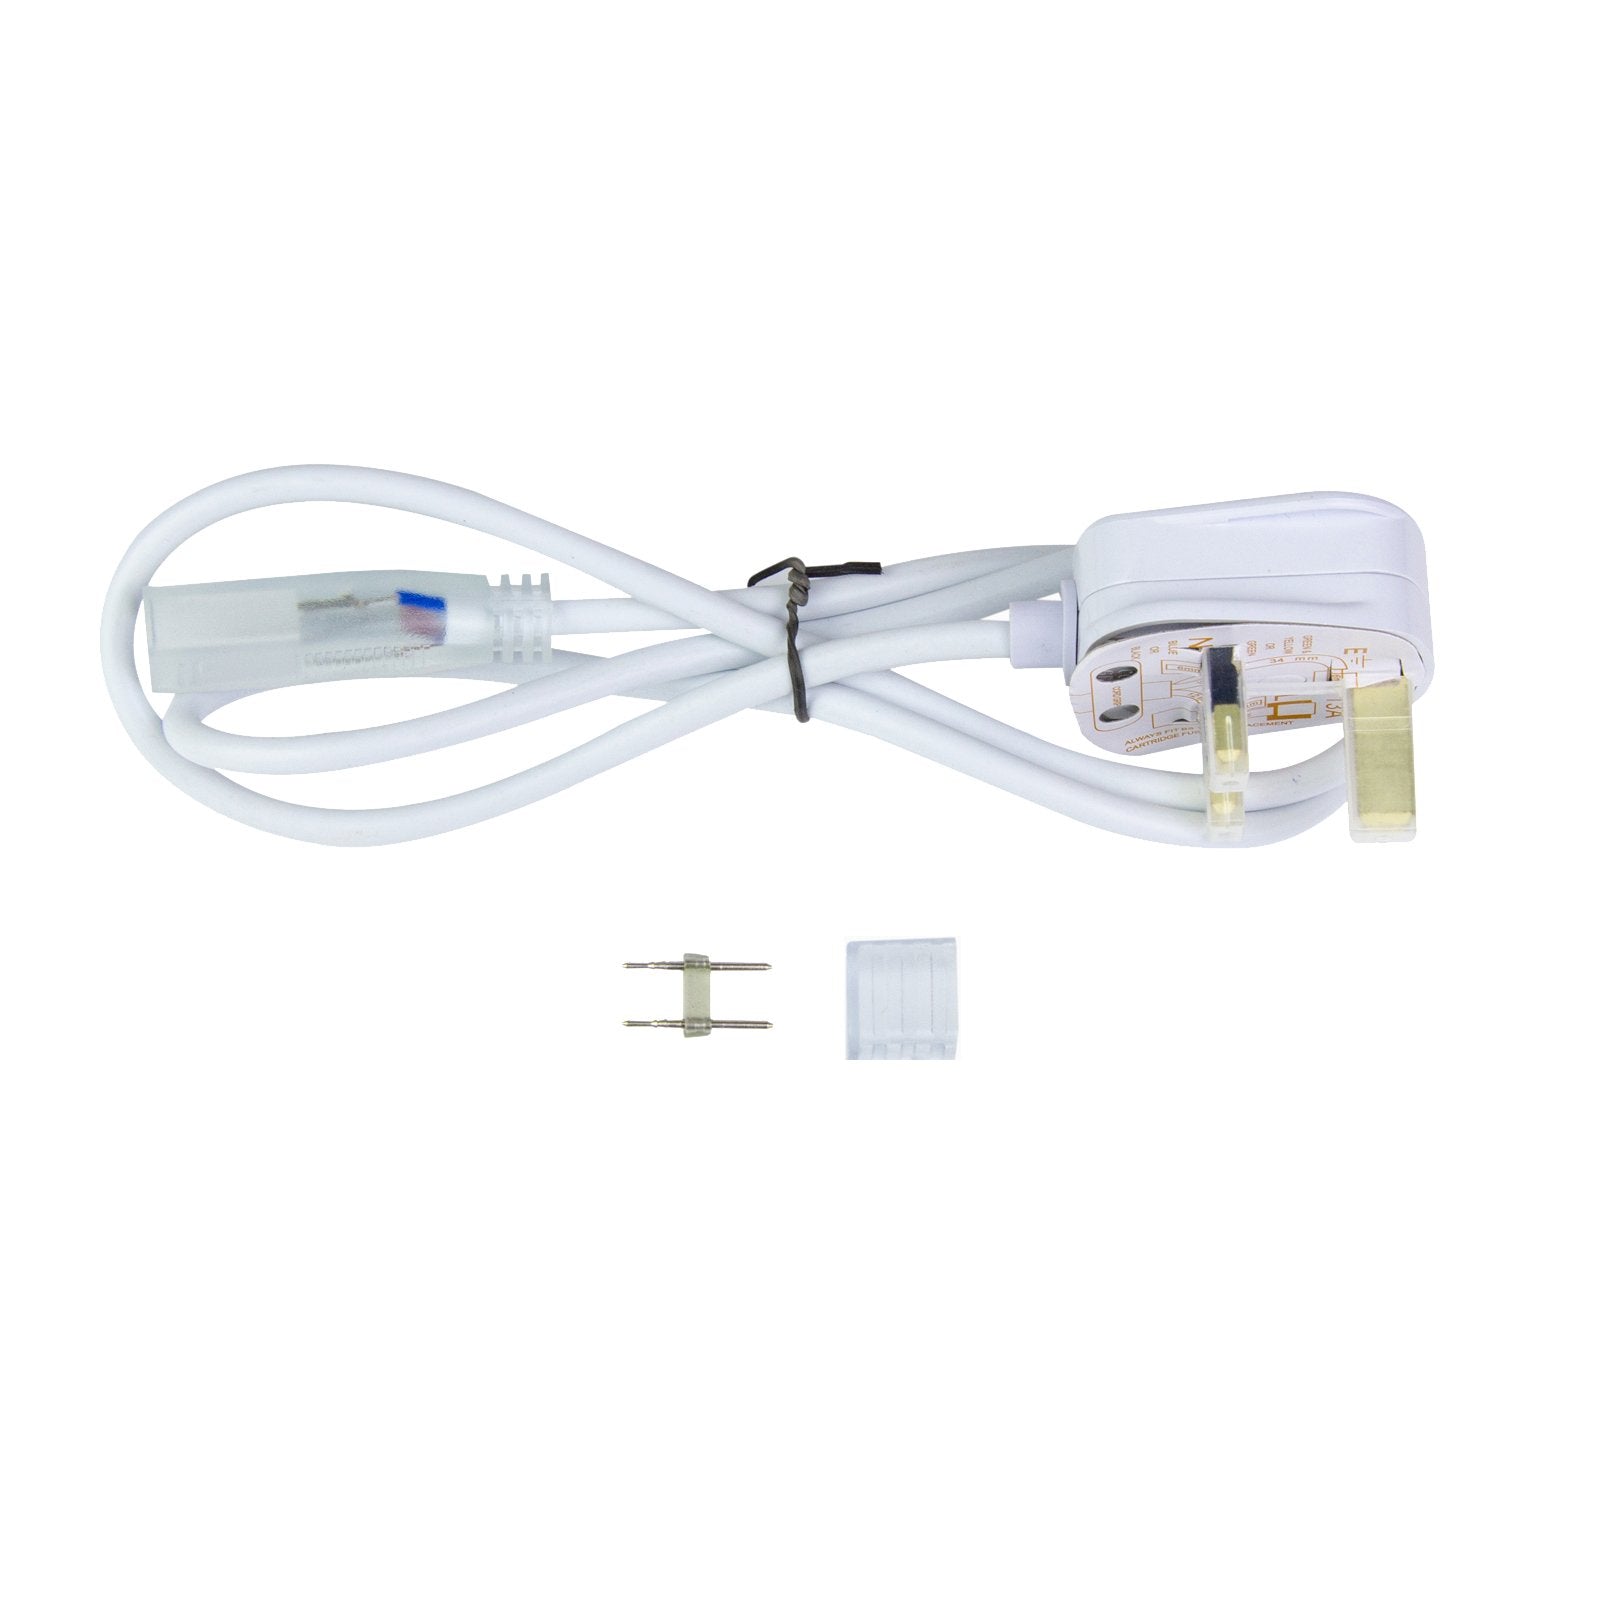 G.W.S. LED Strip Connectors Standard UK Plug Set For AC LED Strip Lights